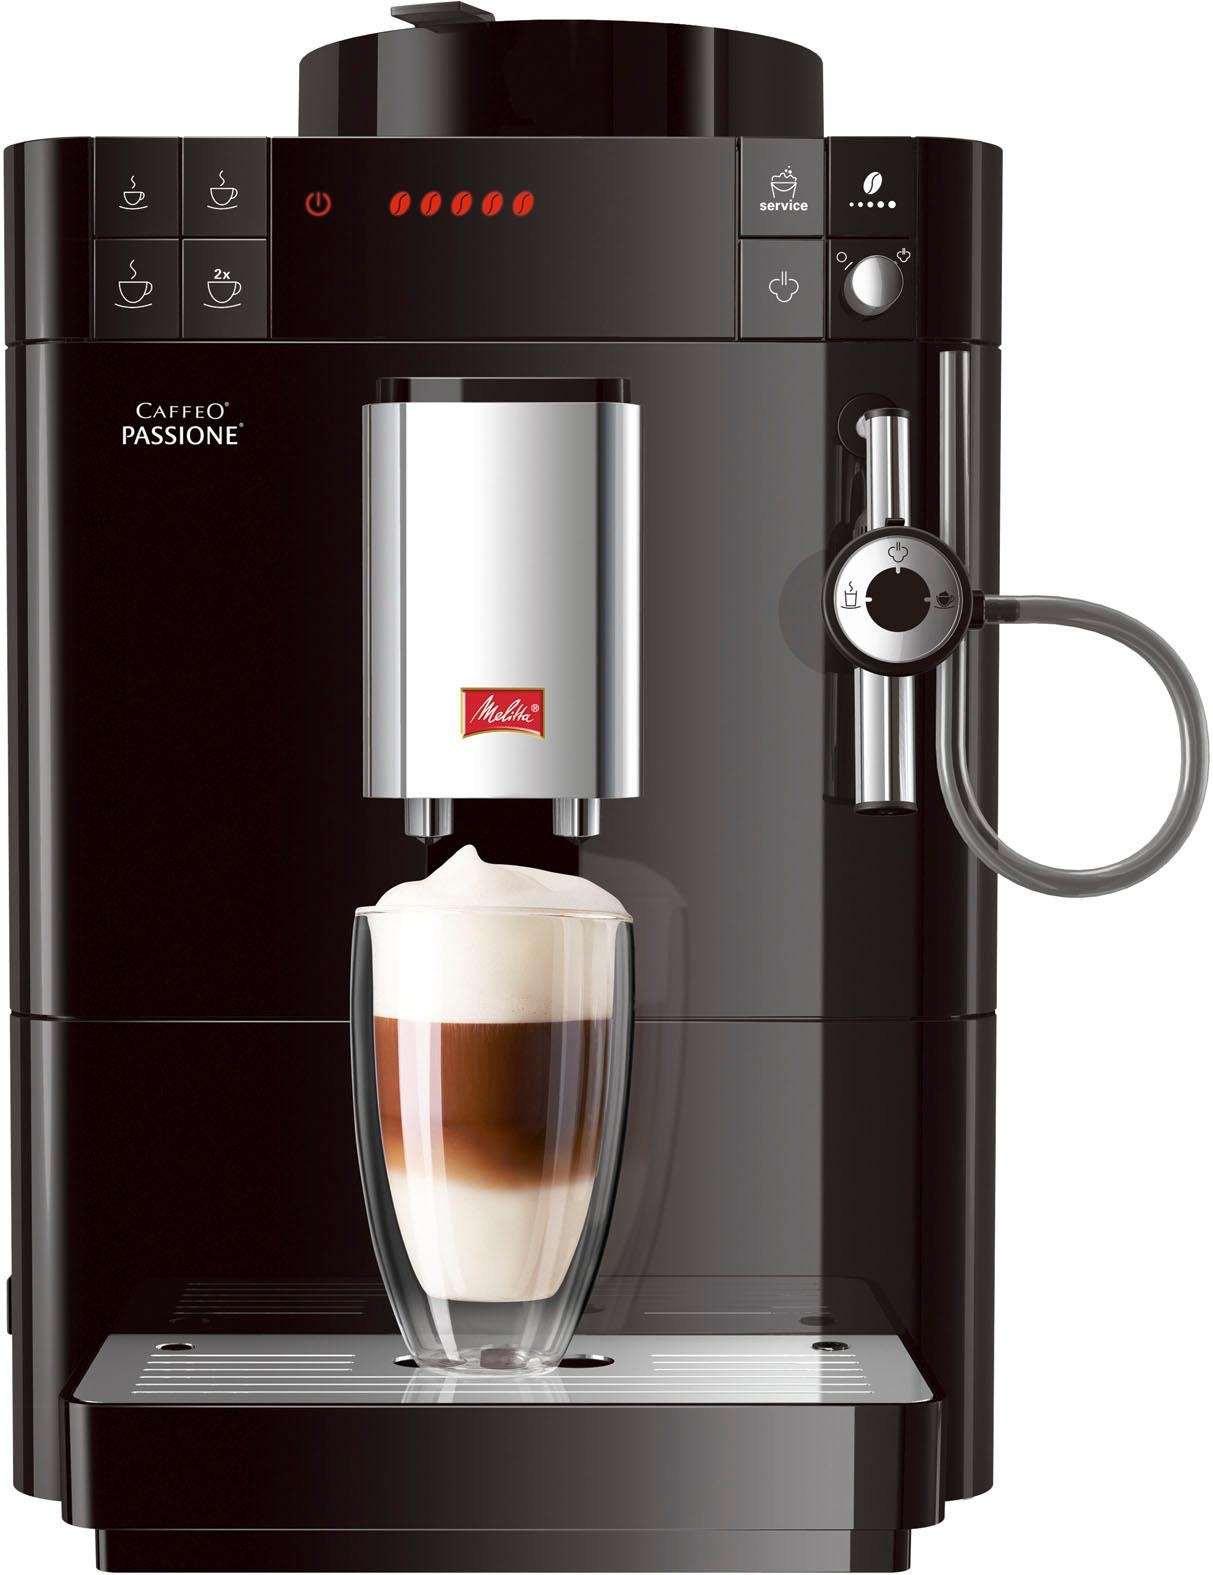 »Passione® Reinigung für Tassengenau OTTO & frisch Service-Taste bei schwarz«, Entkalkung jetzt Melitta bestellen Kaffeevollautomat F53/0-102 gemahlen,